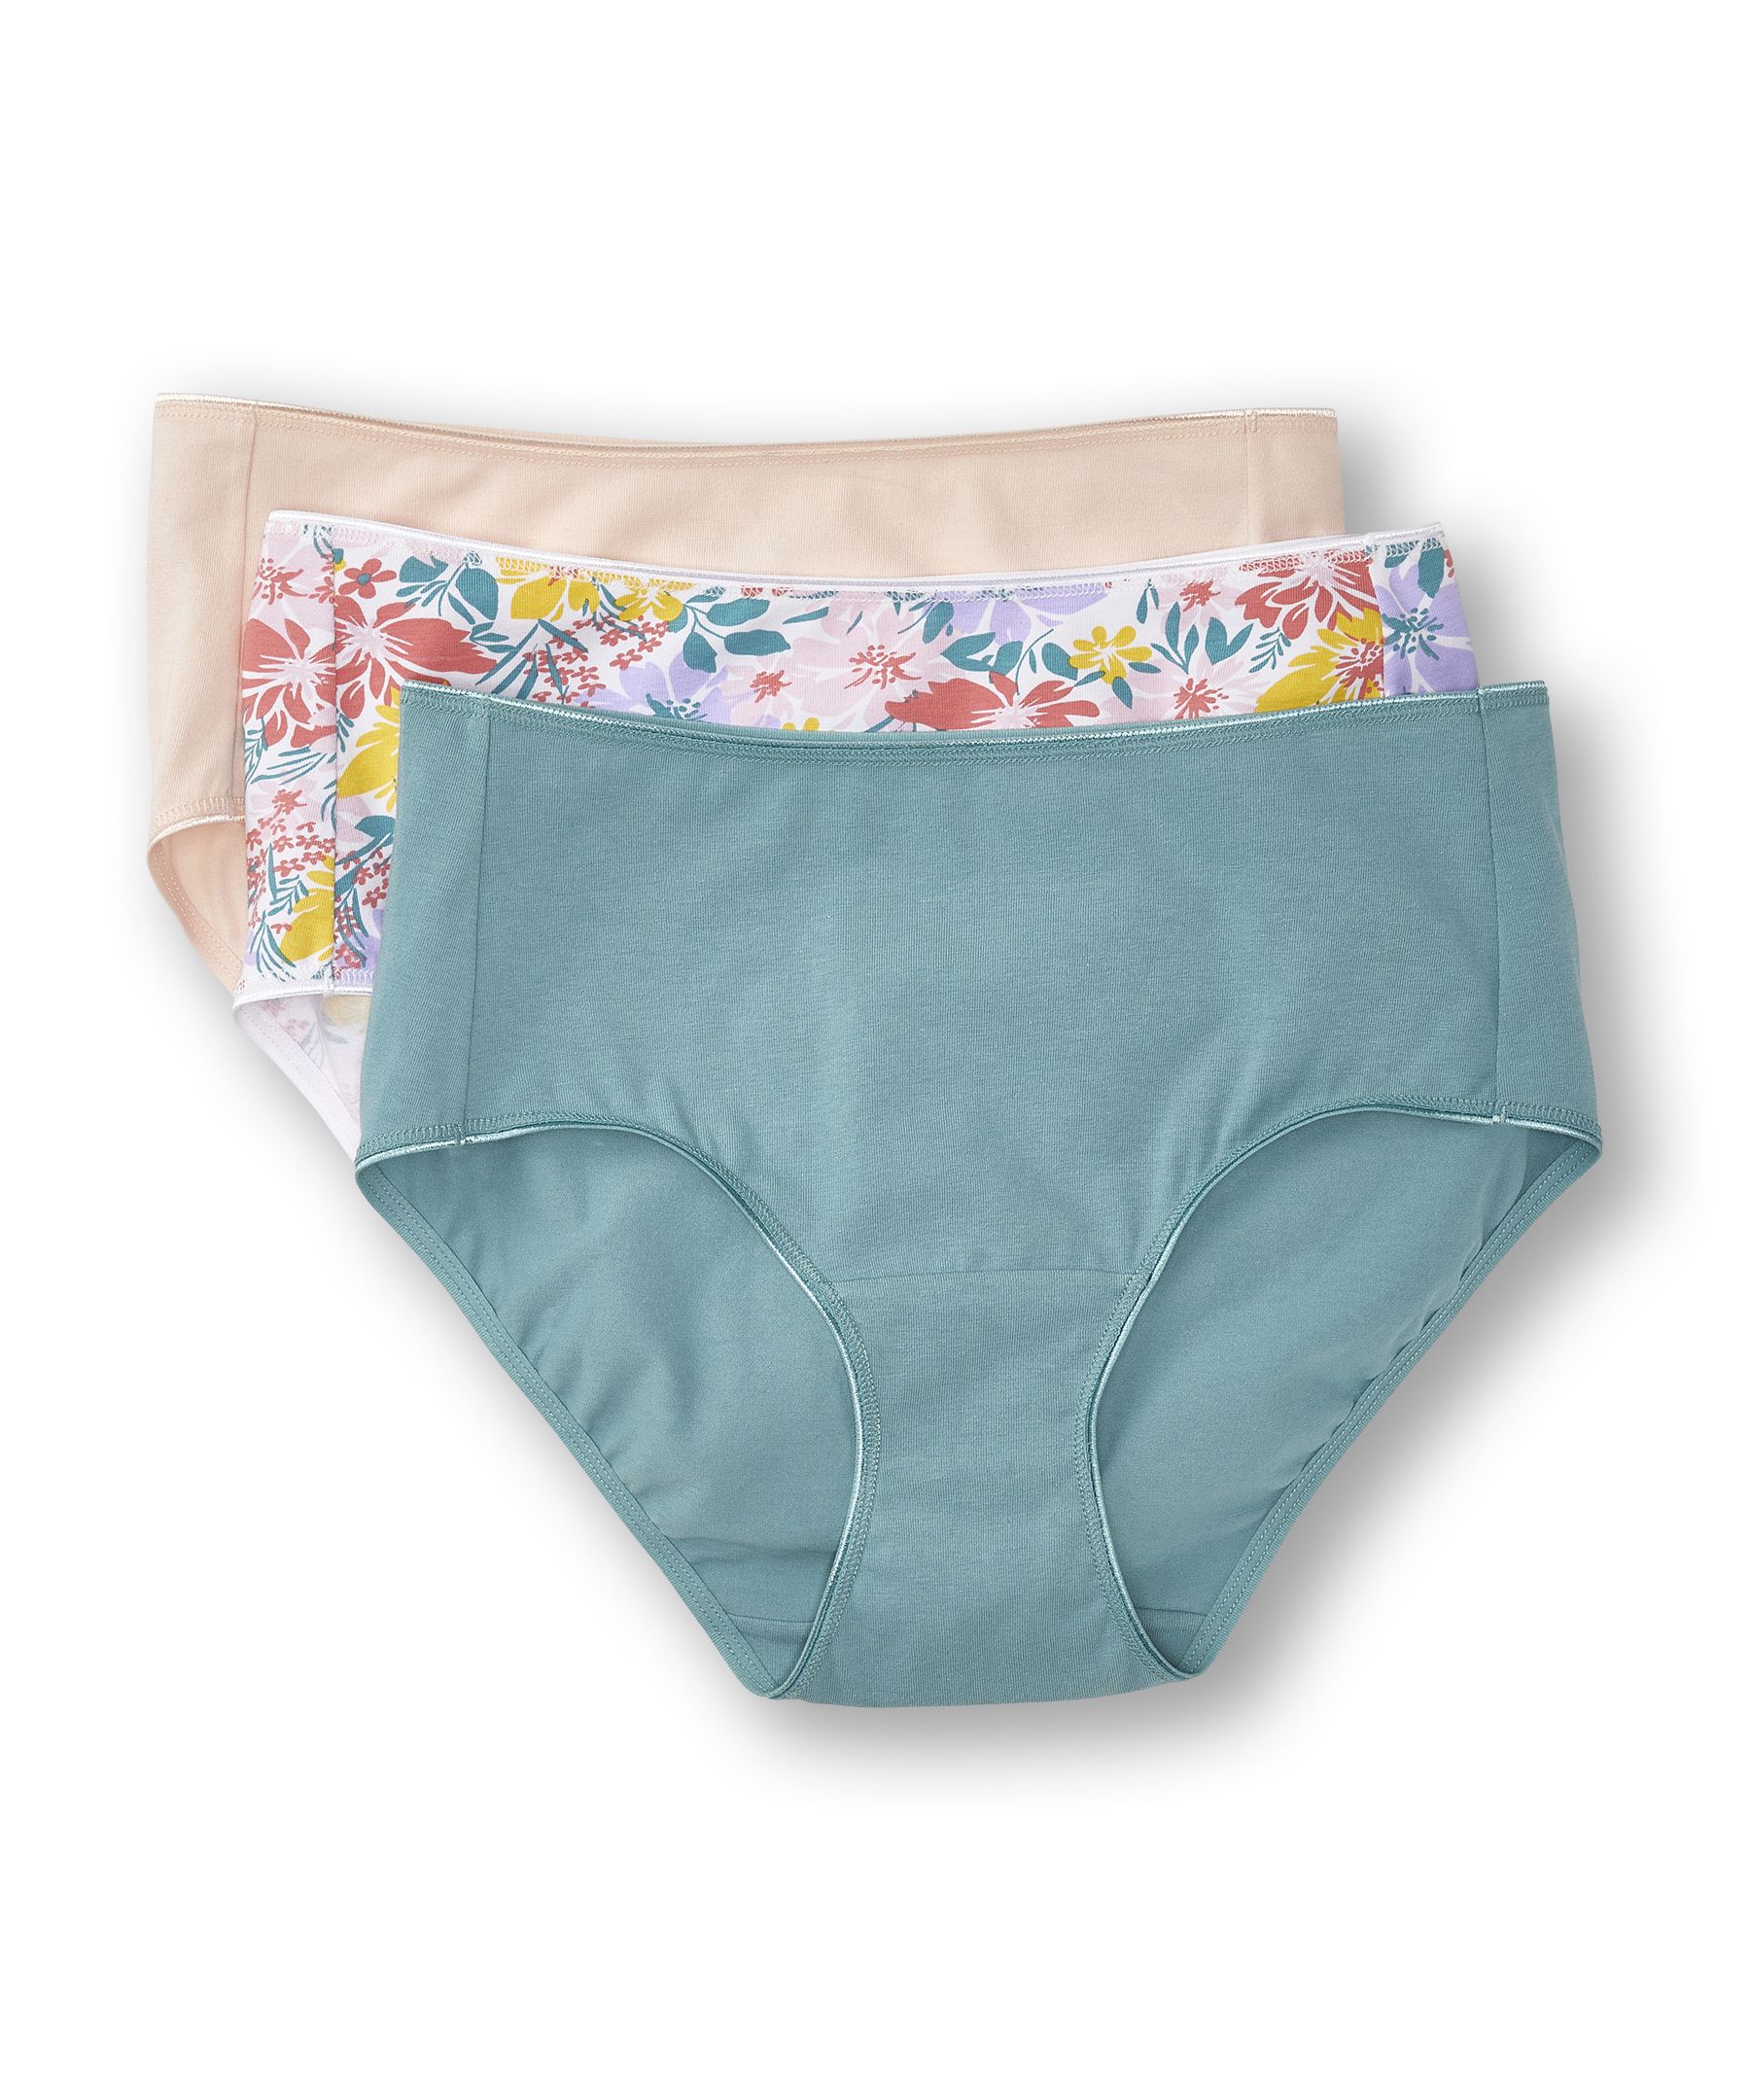 Denver Hayes Women's 3 Pack Cotton Stretch Modern Brief Underwear